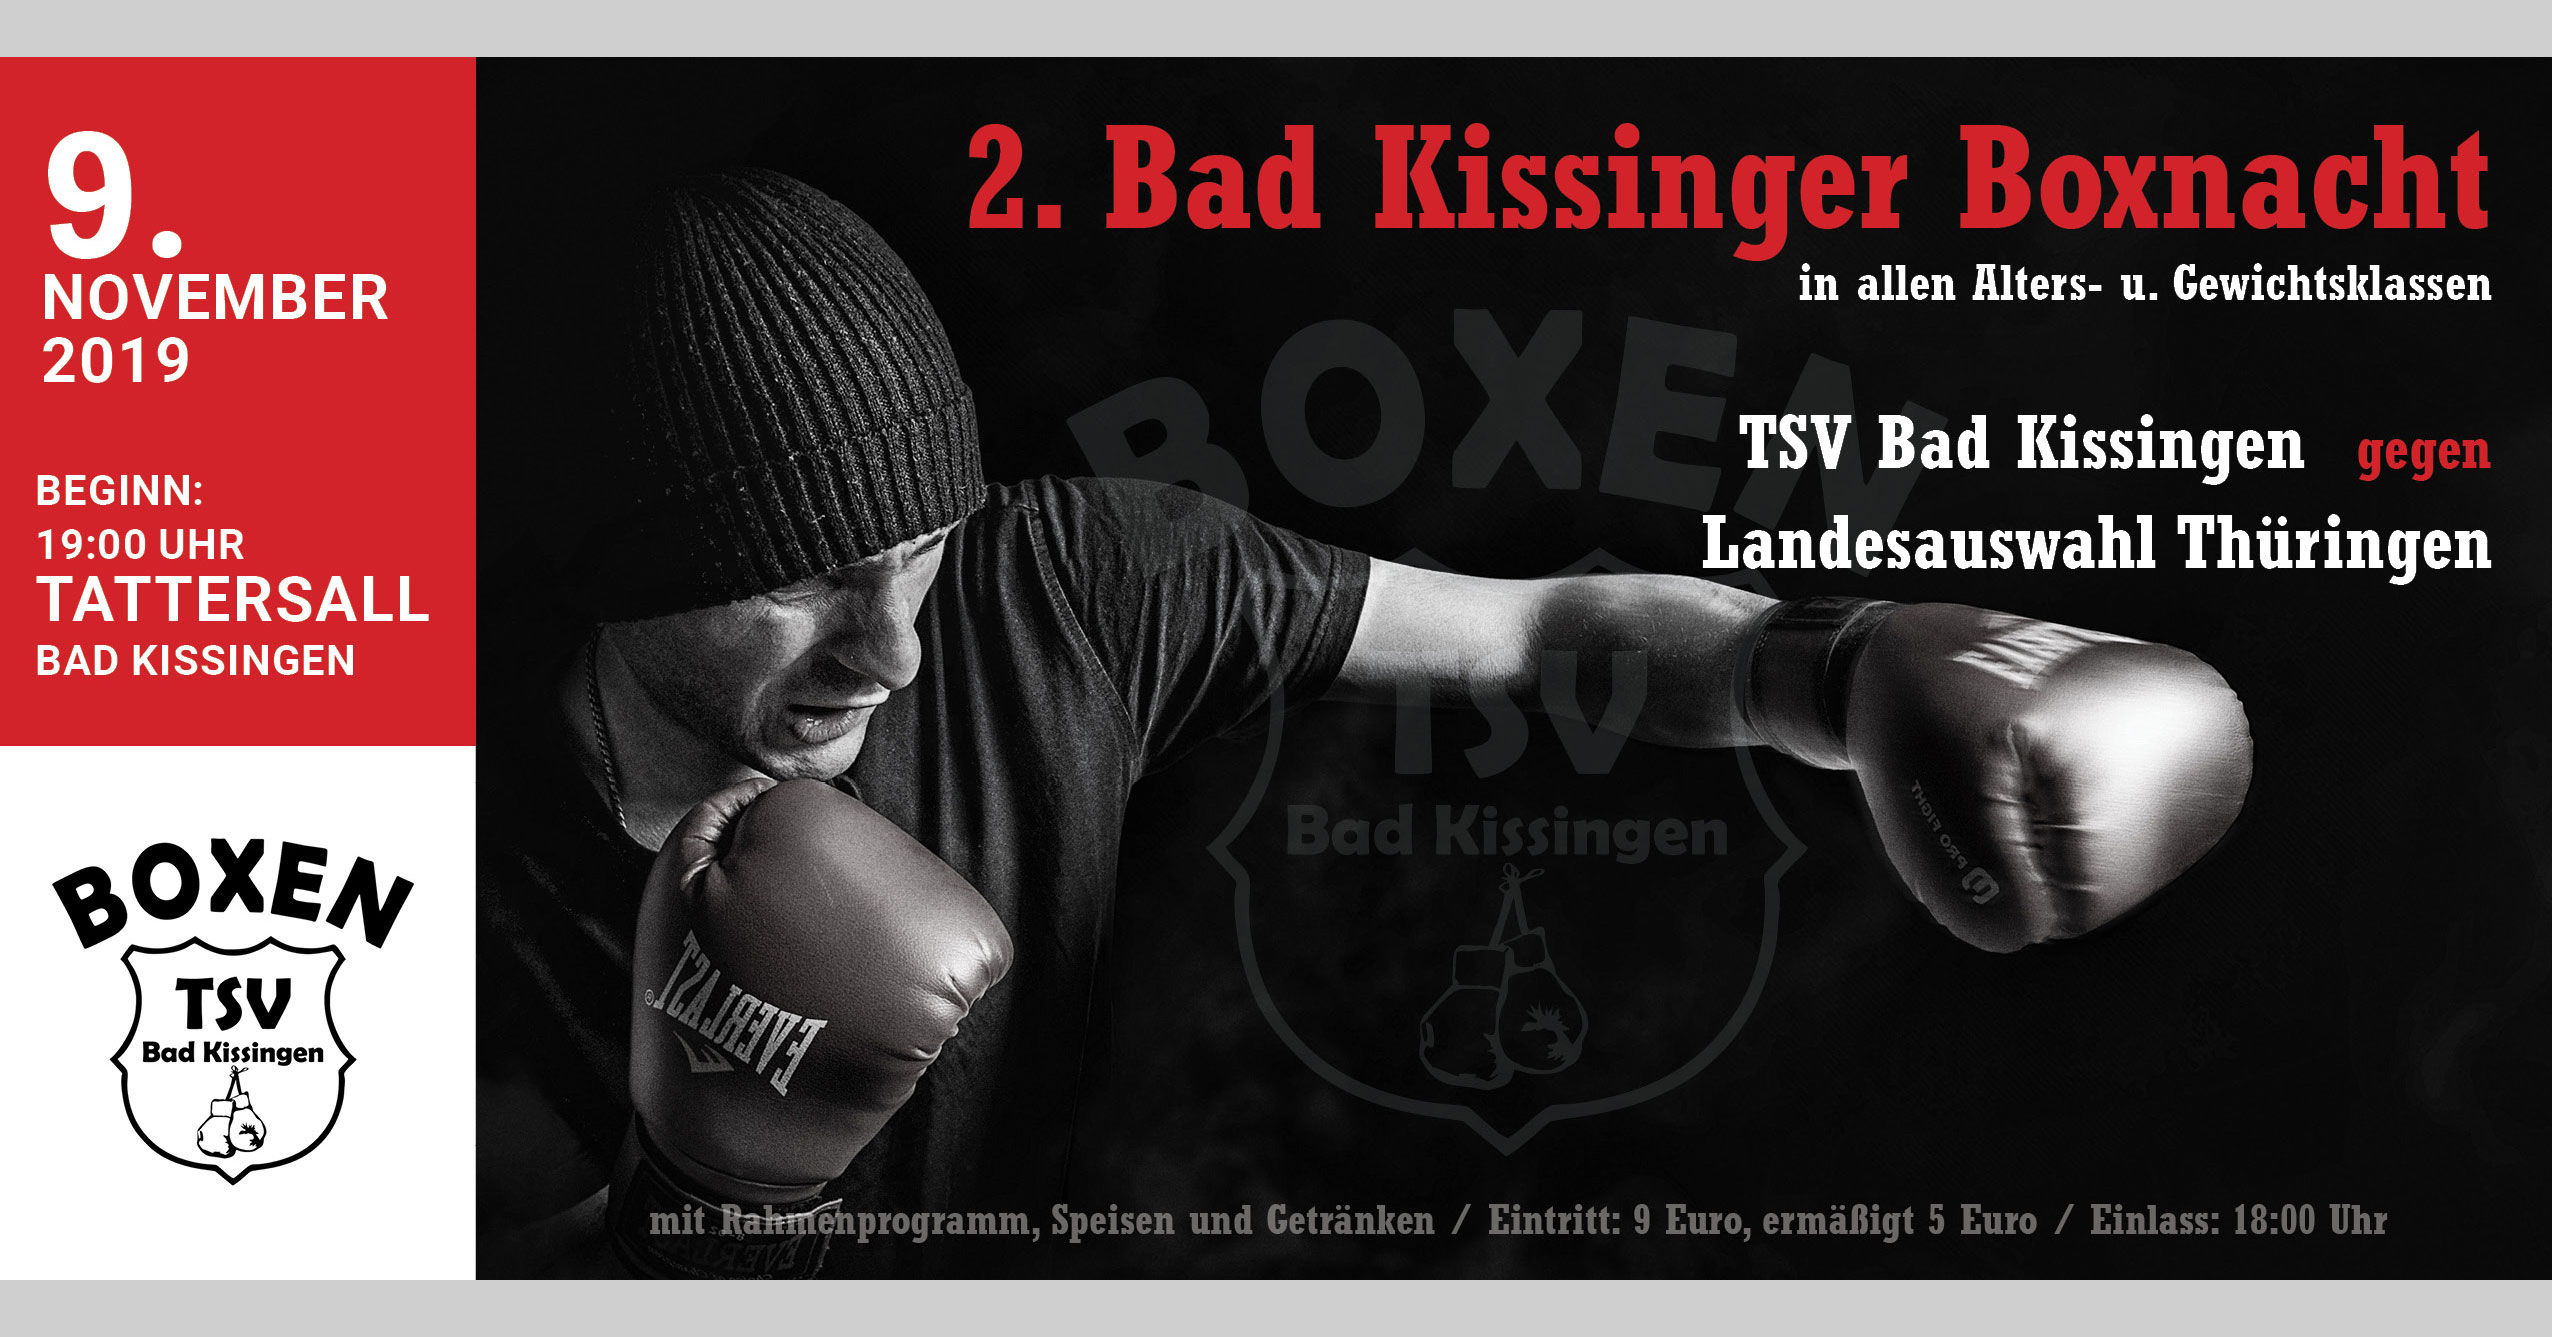 (c) Kissinger-boxnacht.de